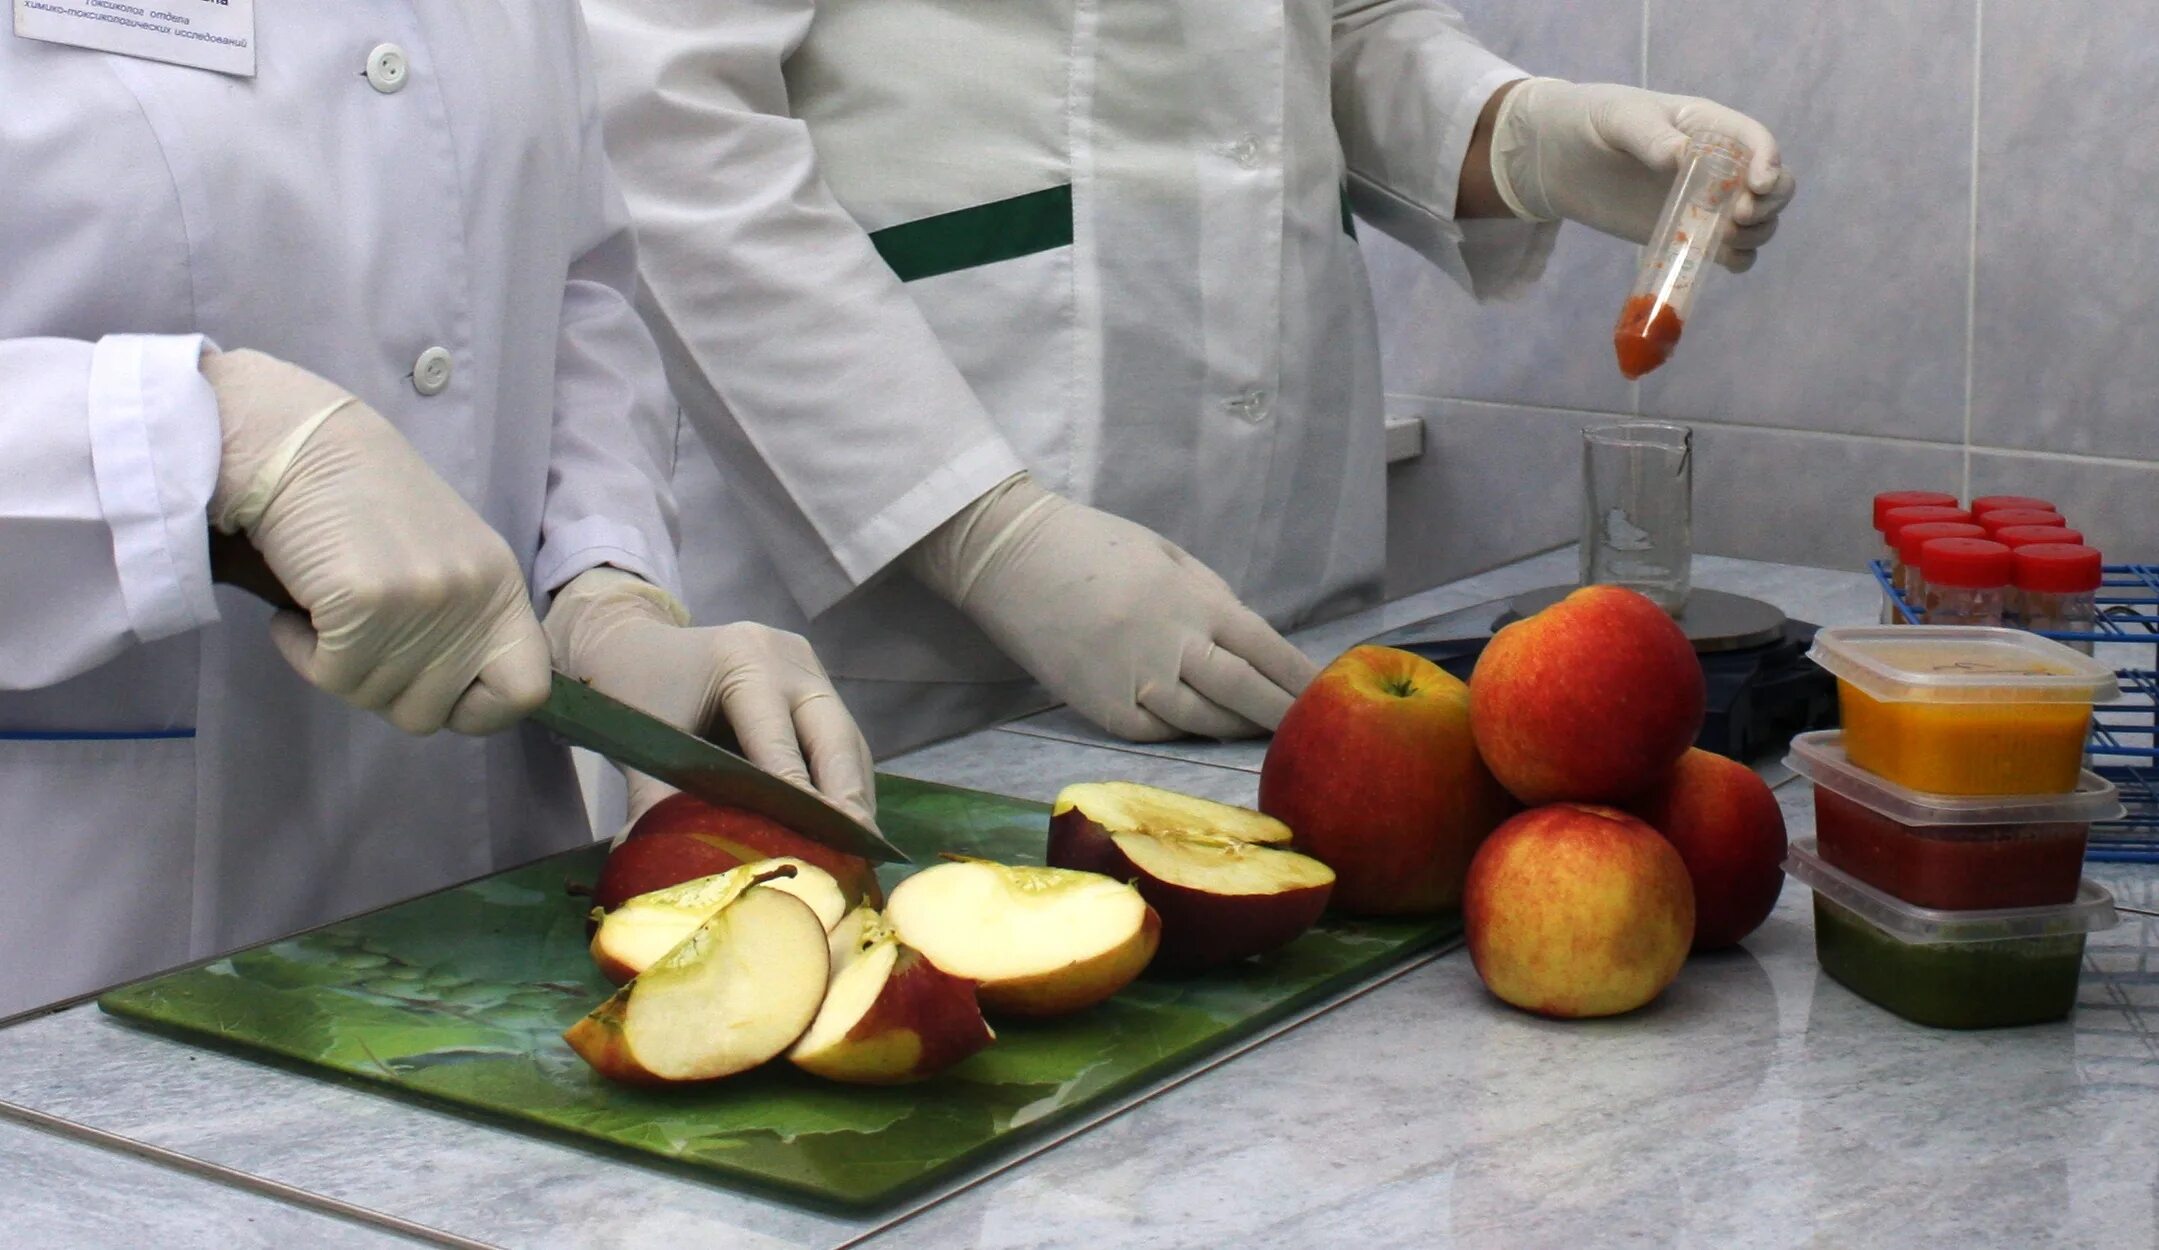 Оценка качества овощей. Экспертиза фруктов и овощей. Исследование пищевых продуктов. Экспертиза пищевых продуктов. Ветеринарно санитарная экспертиза овощей и фруктов.